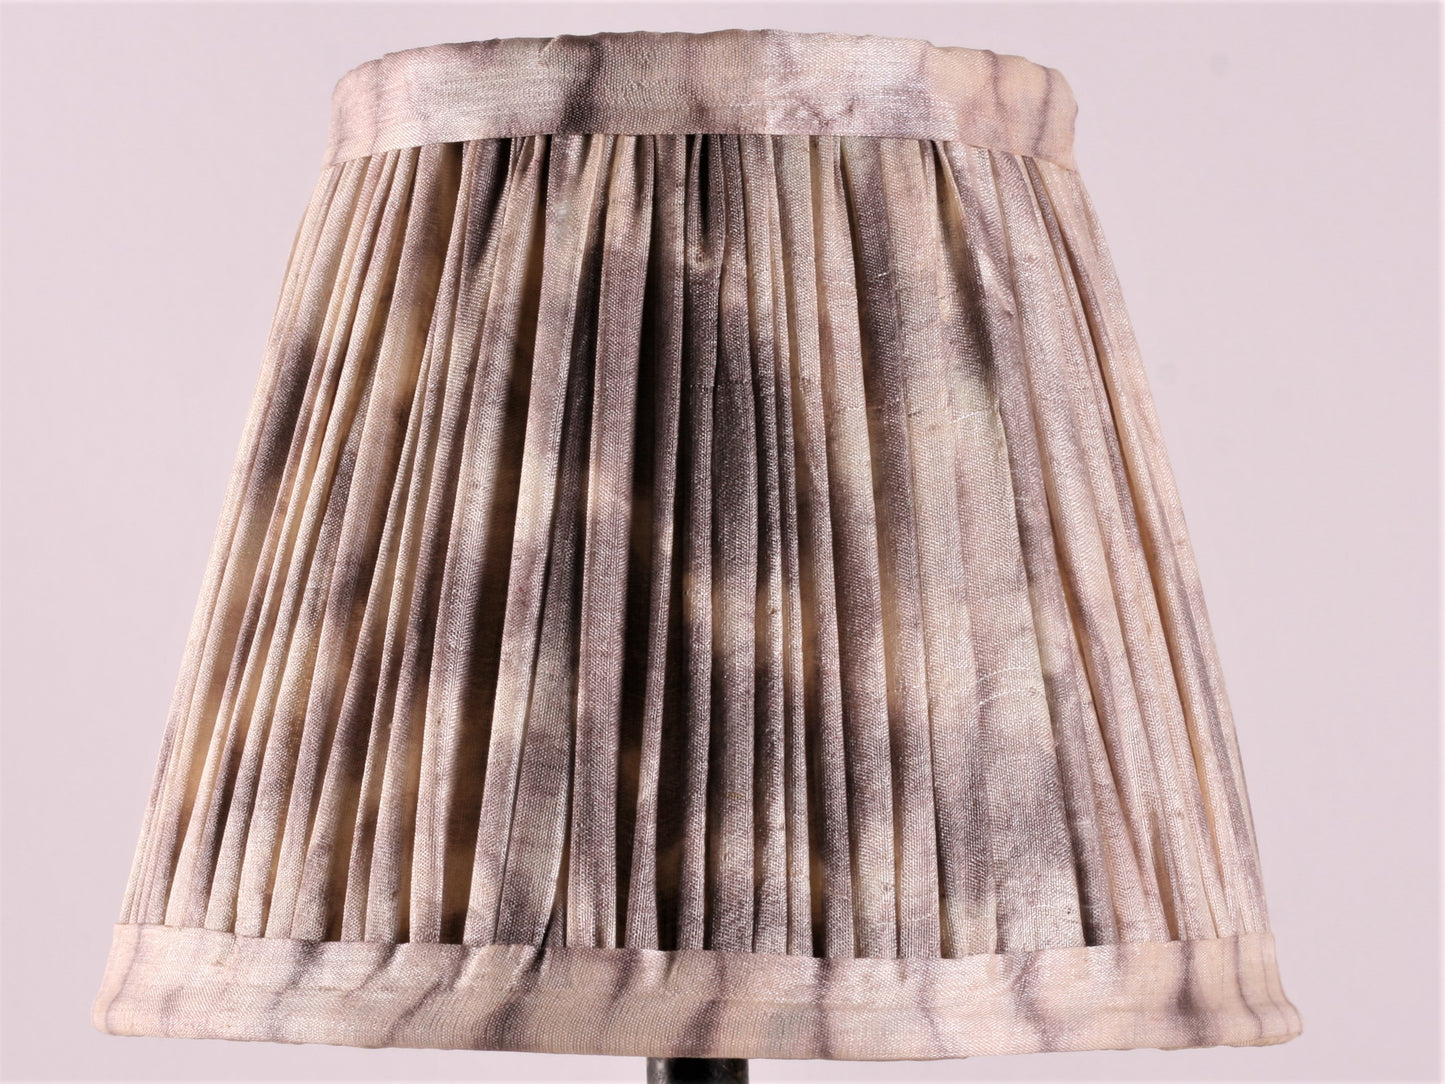 Shibori ashvem silk lampshade